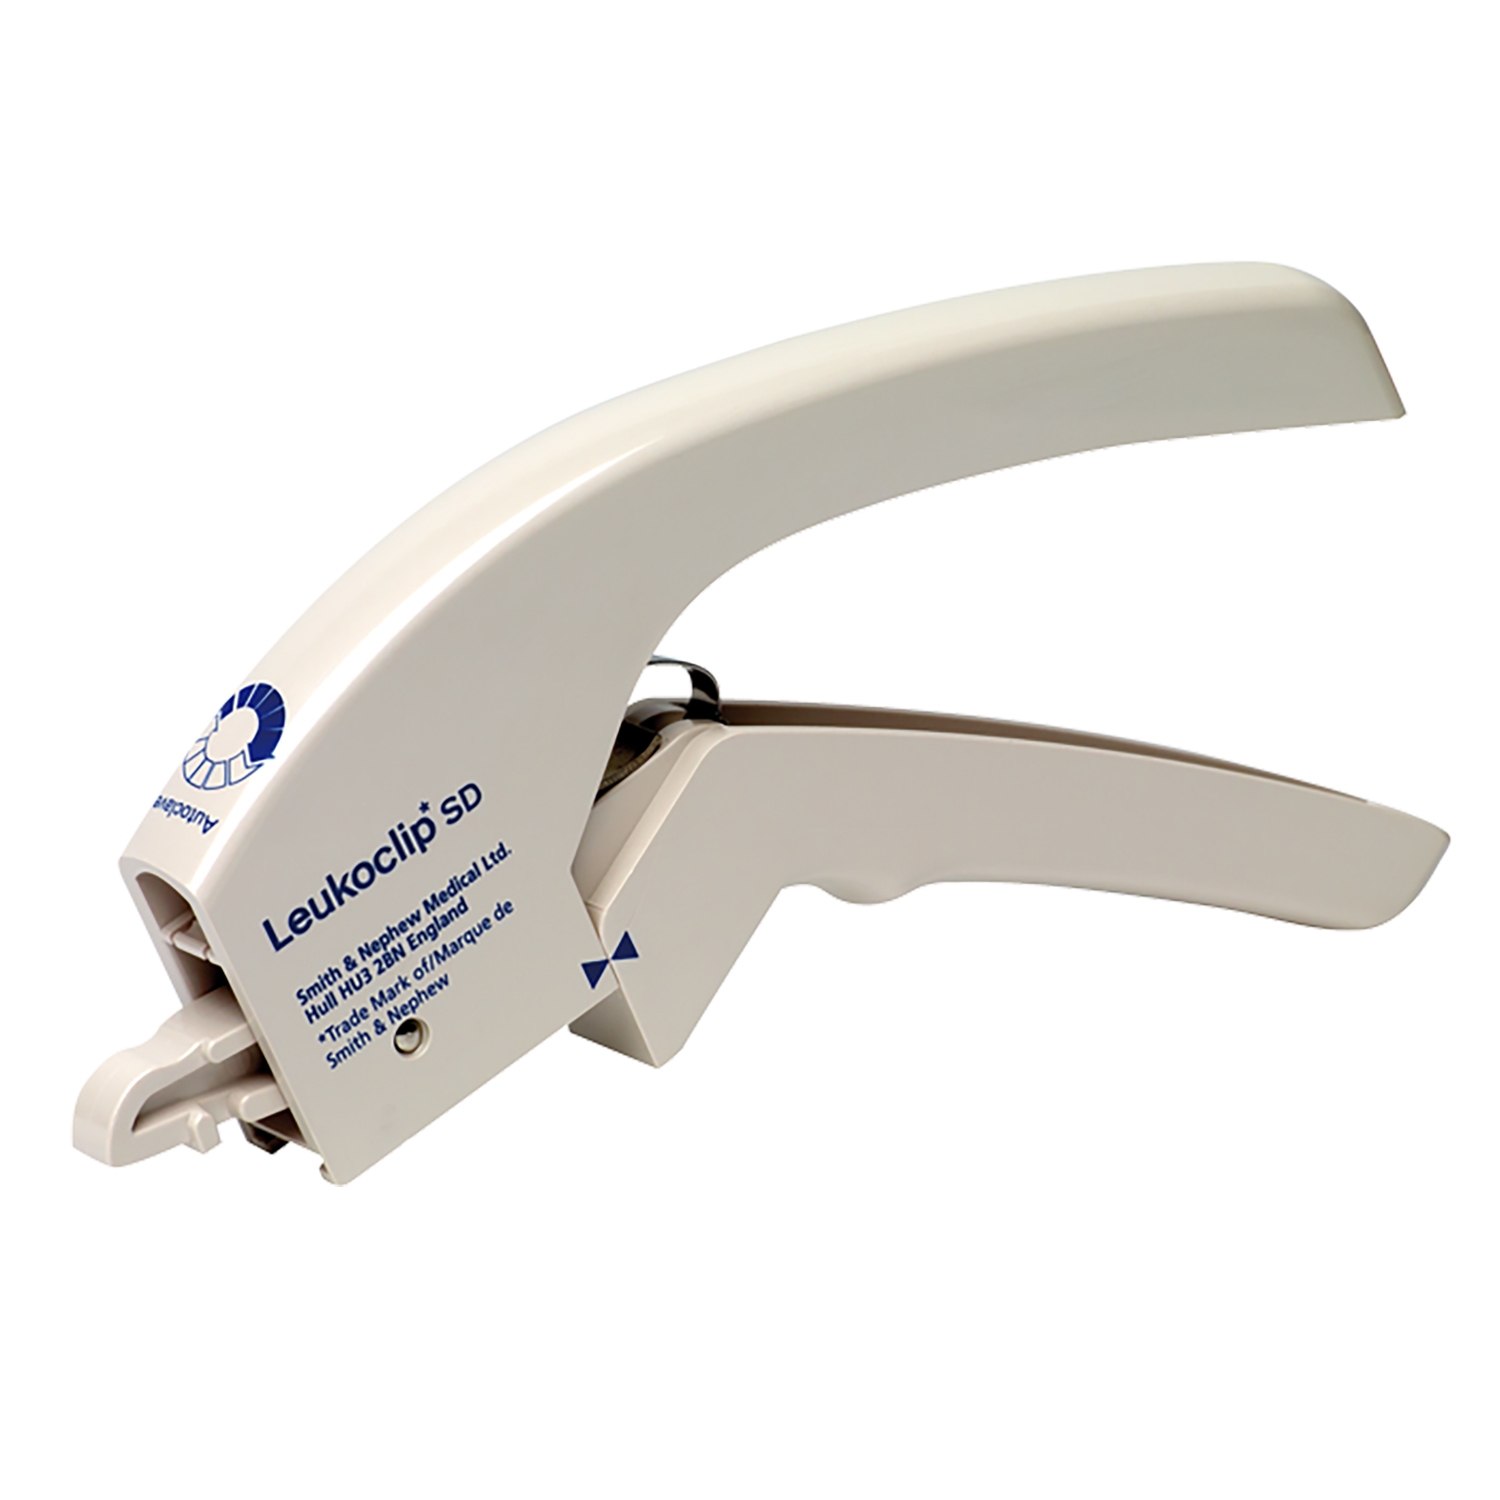 Leukoclip disposable skin stapler